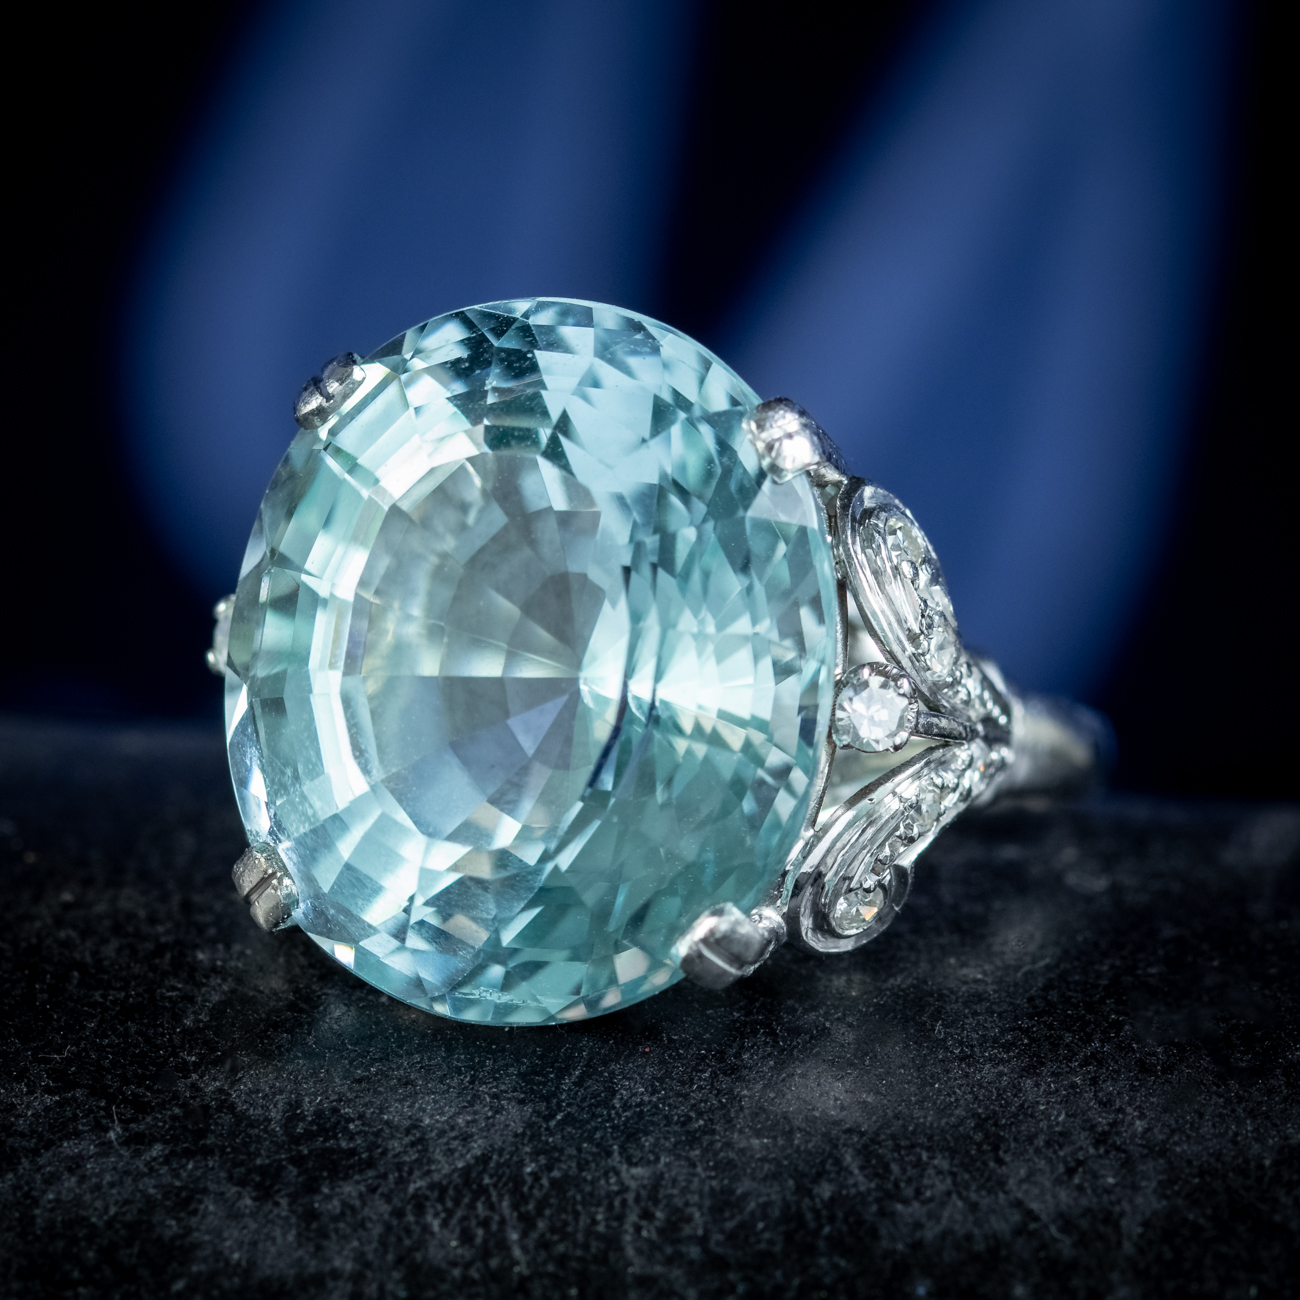 aquamarine ring